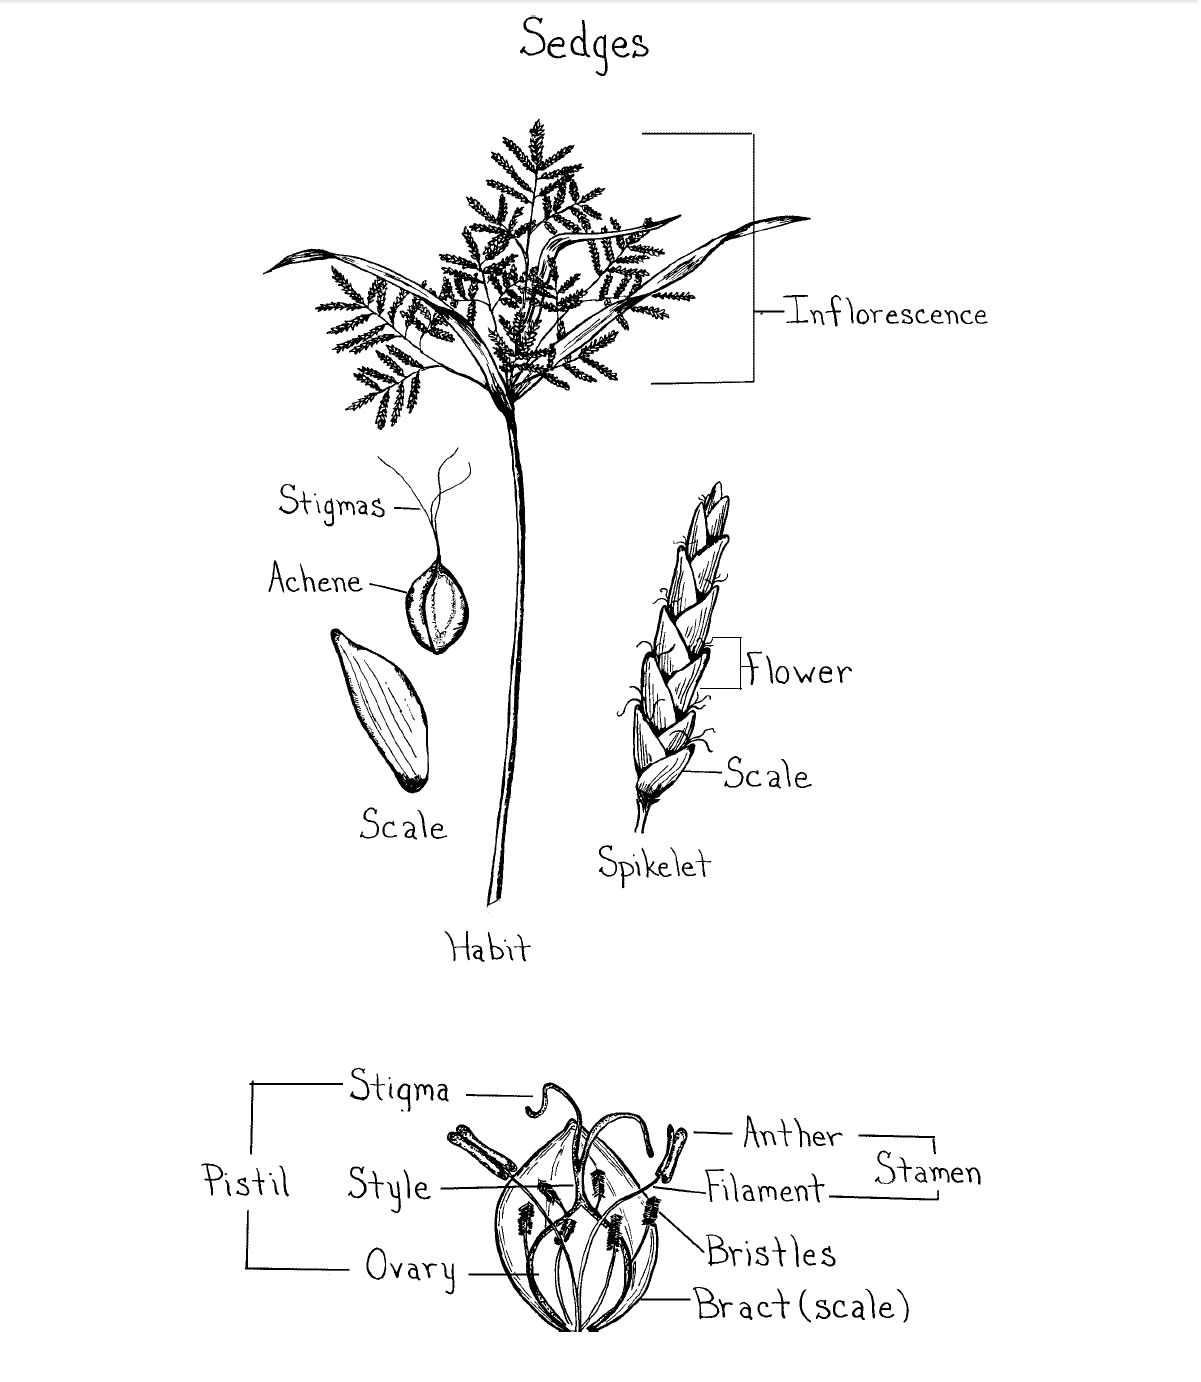 Floral parts of a sedge